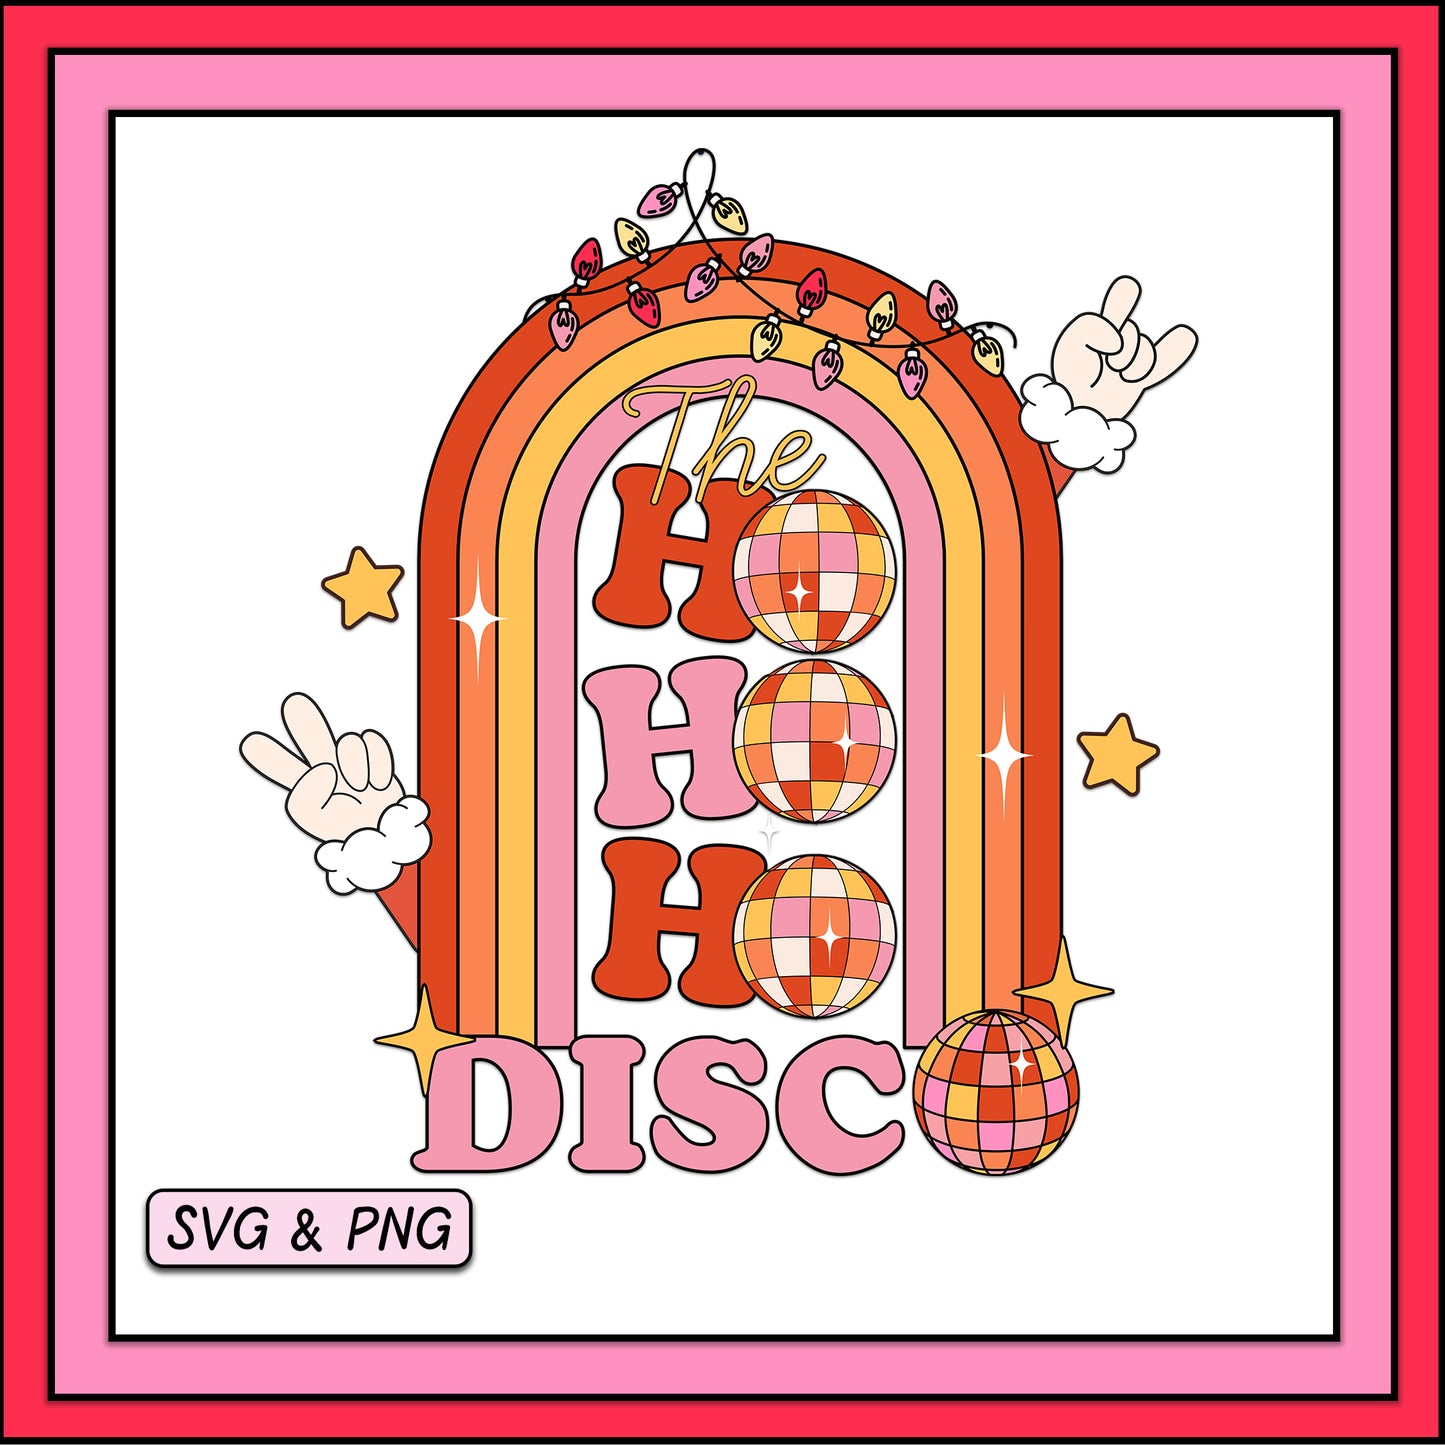 The Ho Ho Ho Disco - SVG & PNG